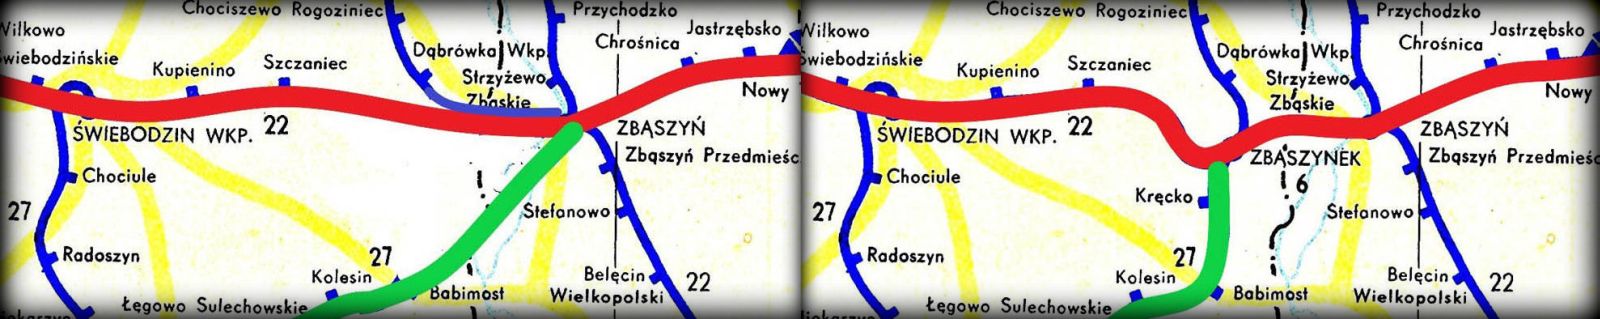 Rozwiązanie połączeń kolejowych Poznań - Guben / Frankfurt/O. Przed i po wybudowaniu Zbąszynka. Mapka po lewej ukazuje pierwotne funkcjonowanie połączeń, w latach 1870 - 1930, bezpośrednie przed powstaniem Zbąszynka. Po prawej stronie sytuacja od 1930 roku, Zbąszynek już gotowy.